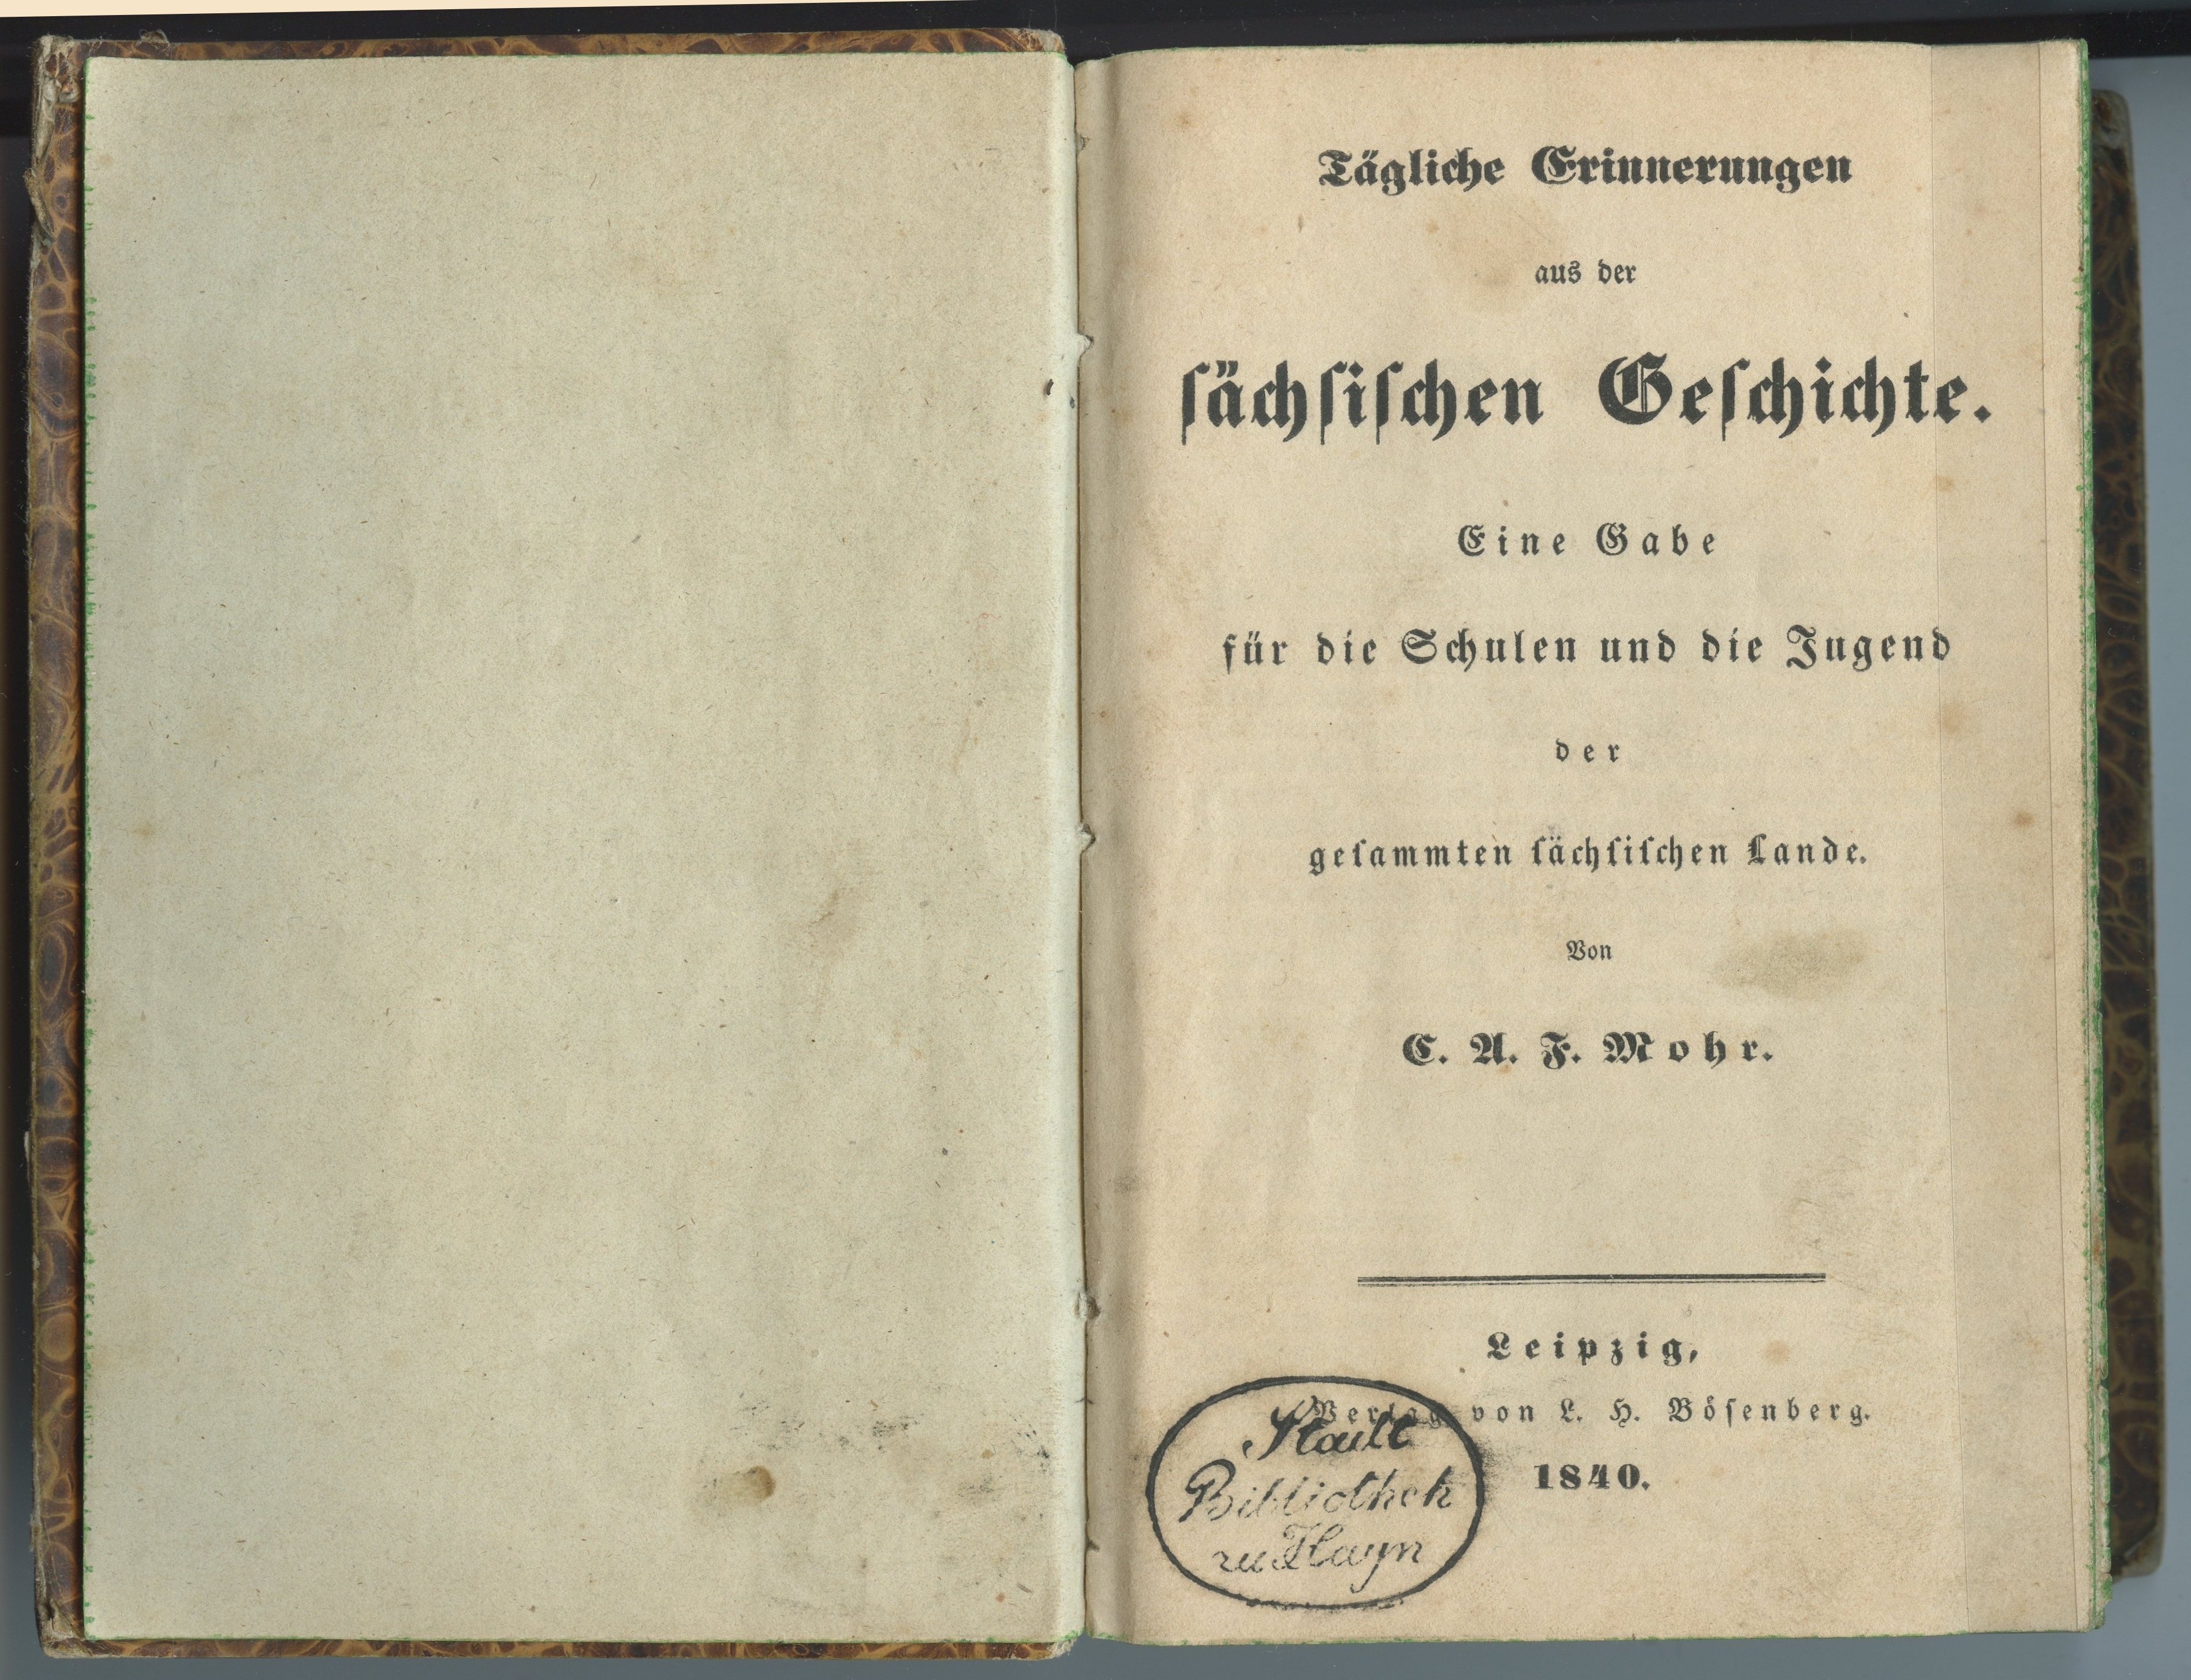 Mohr, Carl August Friedrich: Tägliche Erinnerungen aus der sächsischen Geschichte [...], 1840 (Museum Alte Lateinschule CC BY-NC-SA)